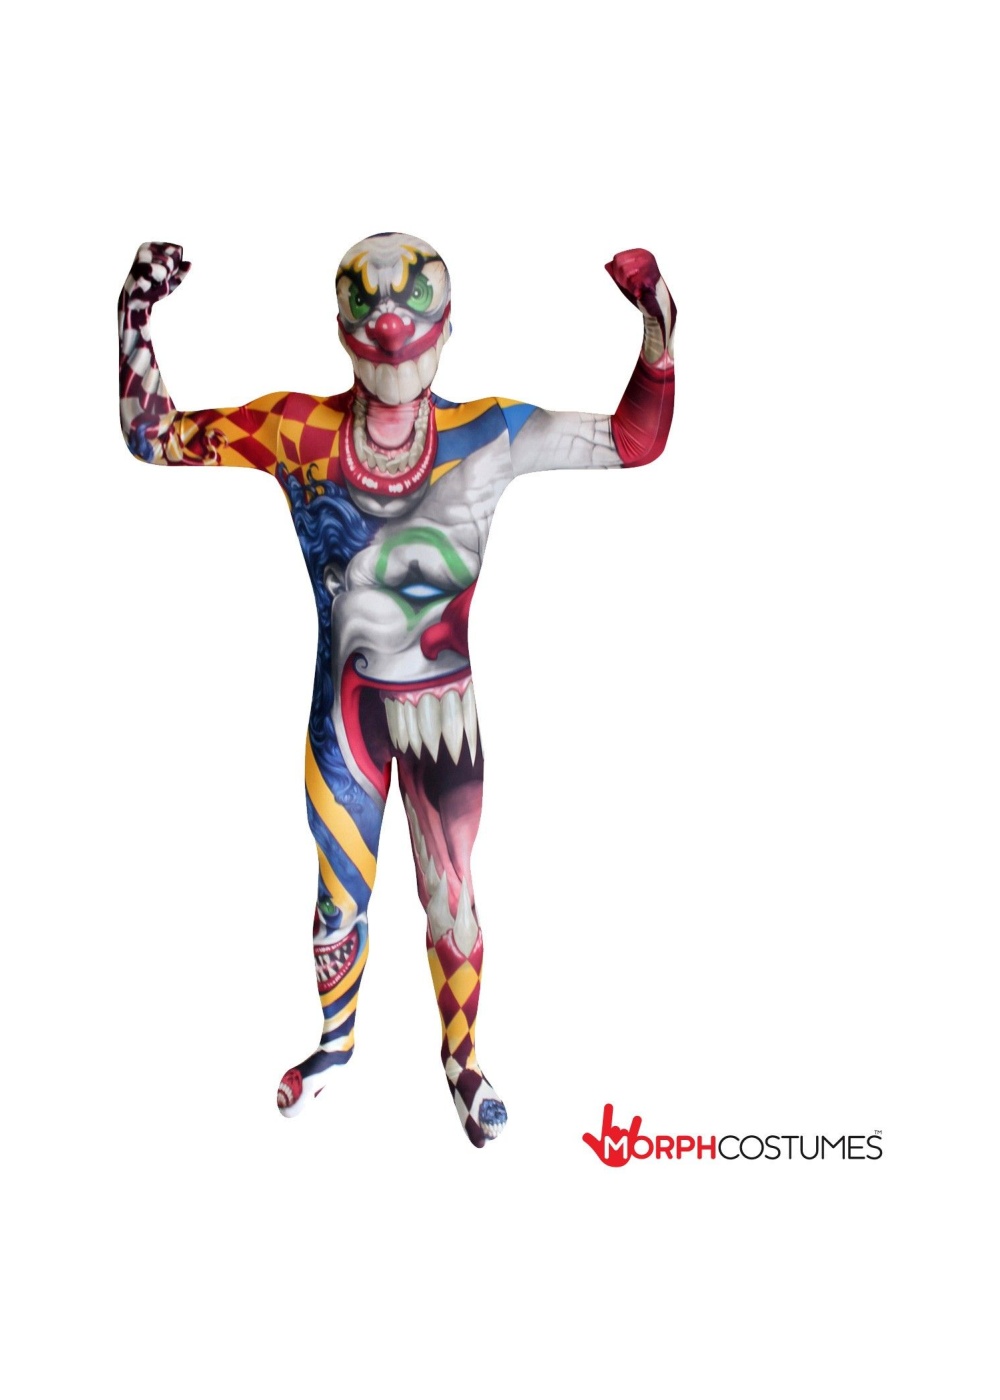  Boys Killer Clown Morphsuit Costume